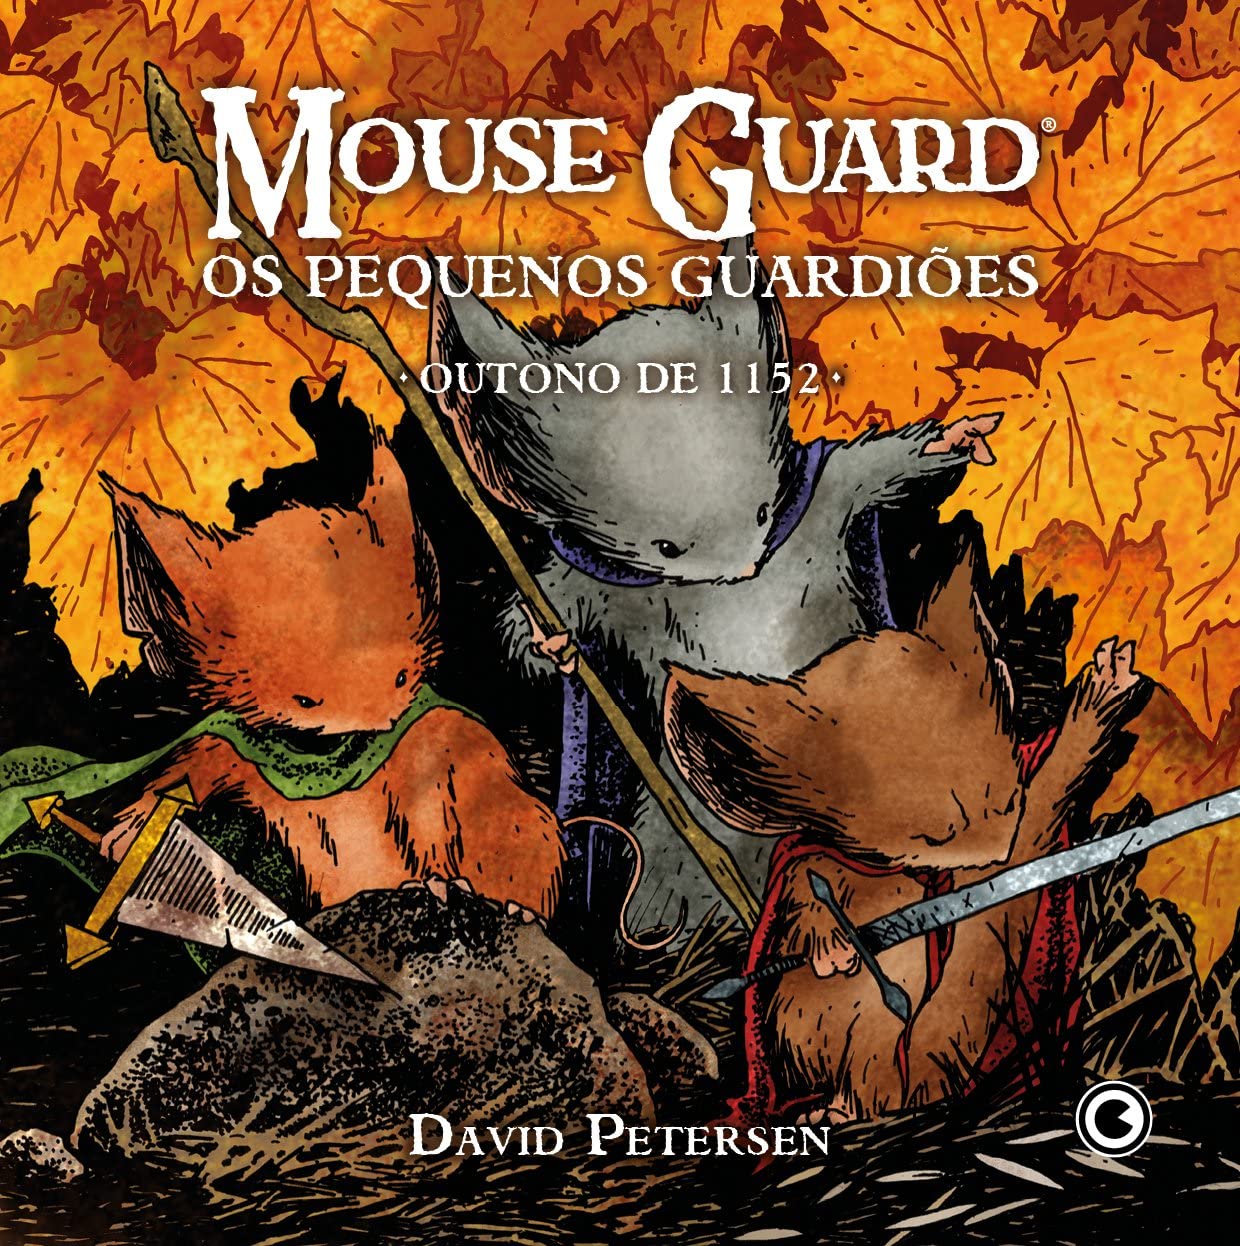 Mouse Guard, os pequenos guardiões: outono de 1152